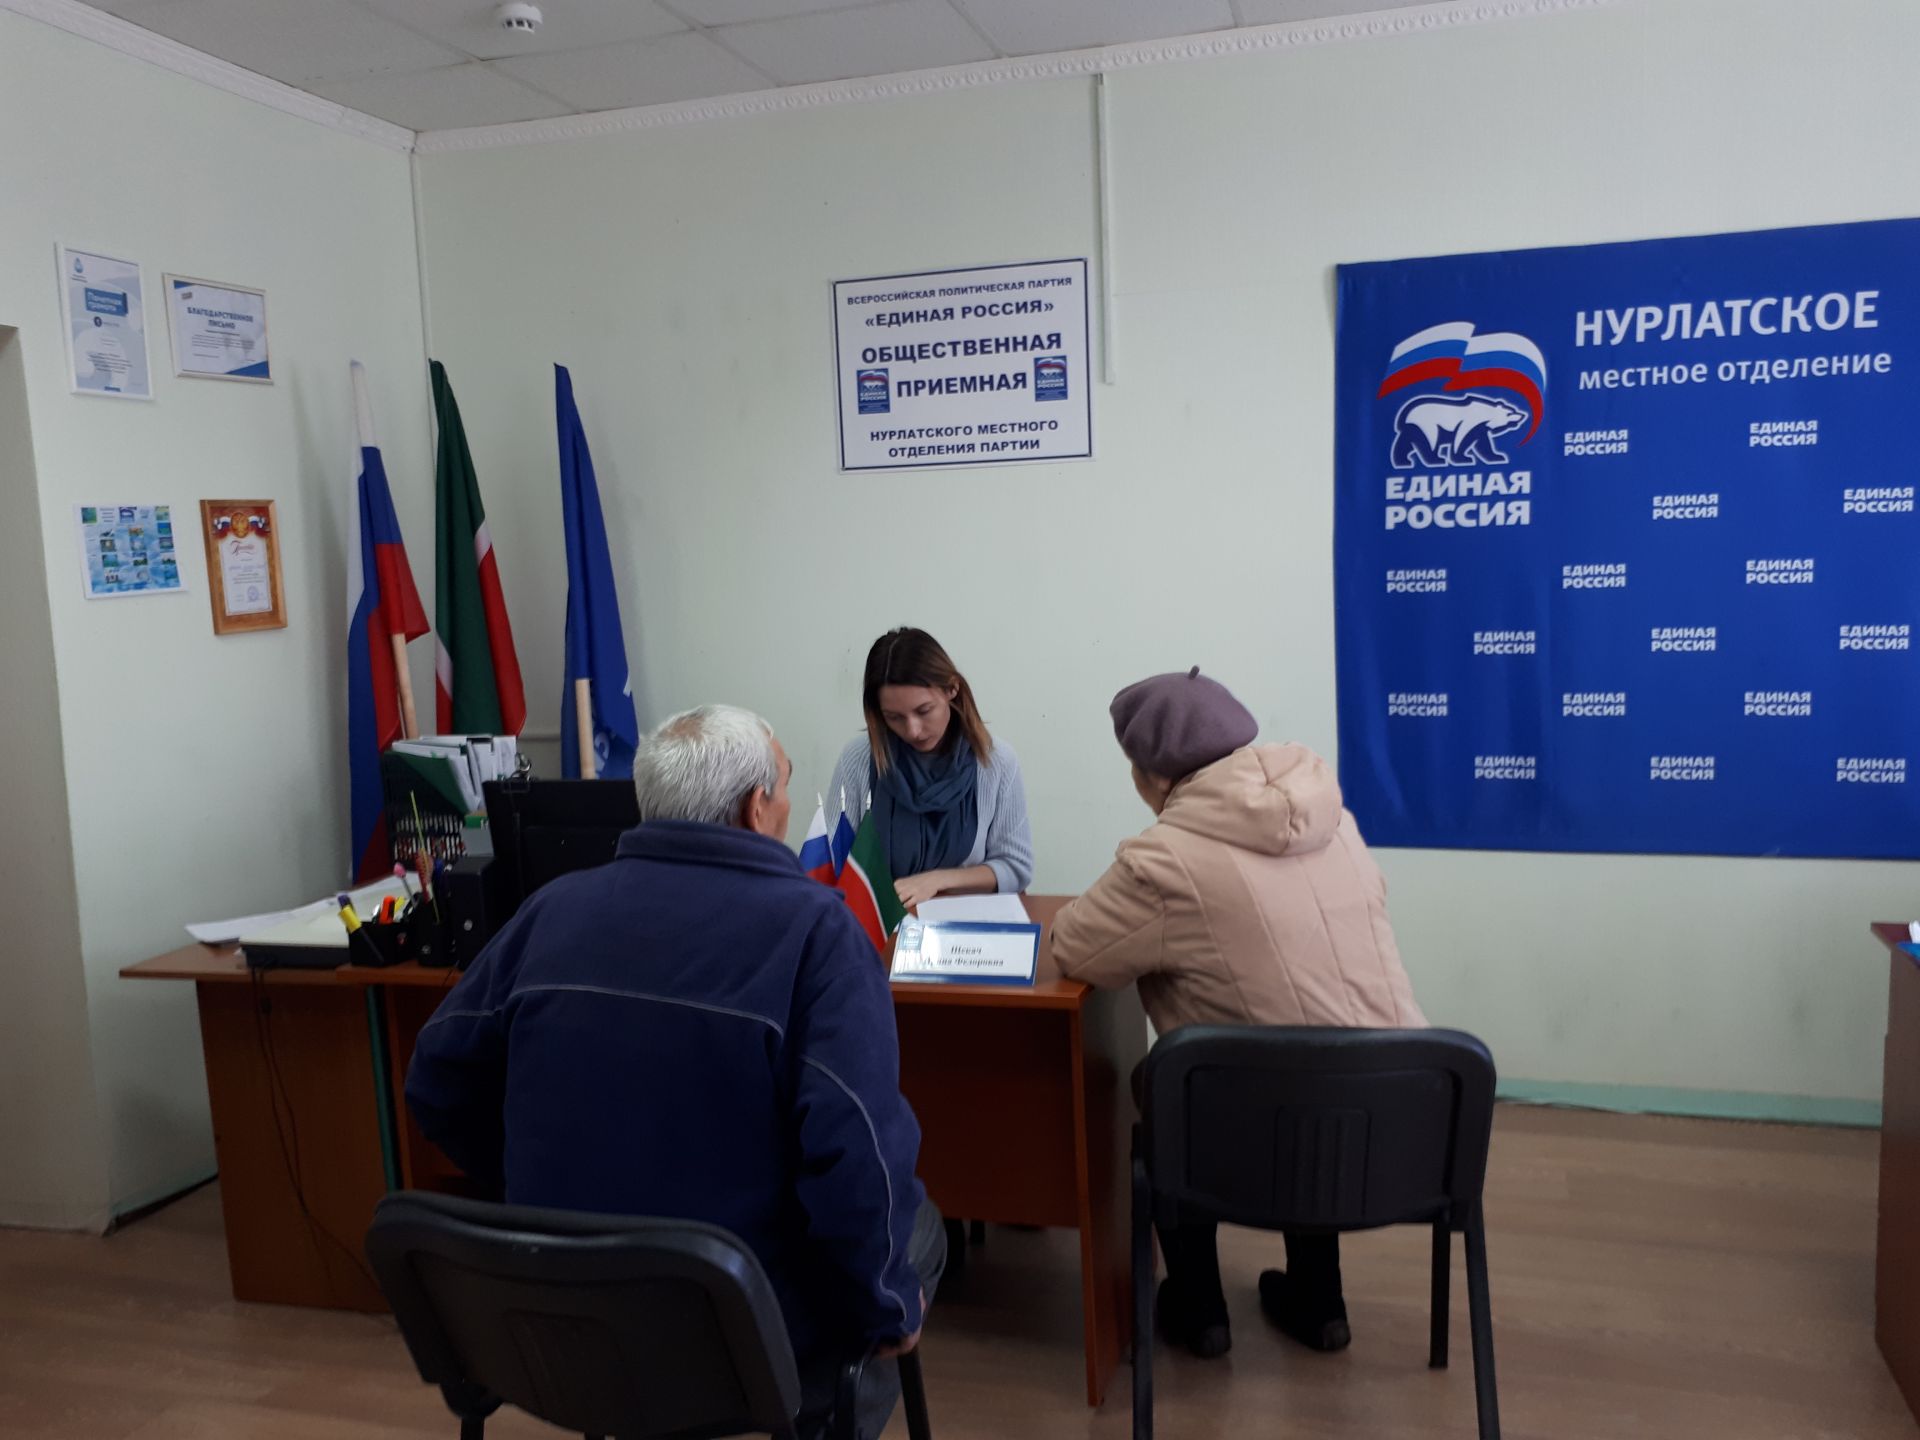 Нурлатцы получили бесплатную юридическую помощь в общественной приемной партии «Единая Россия»